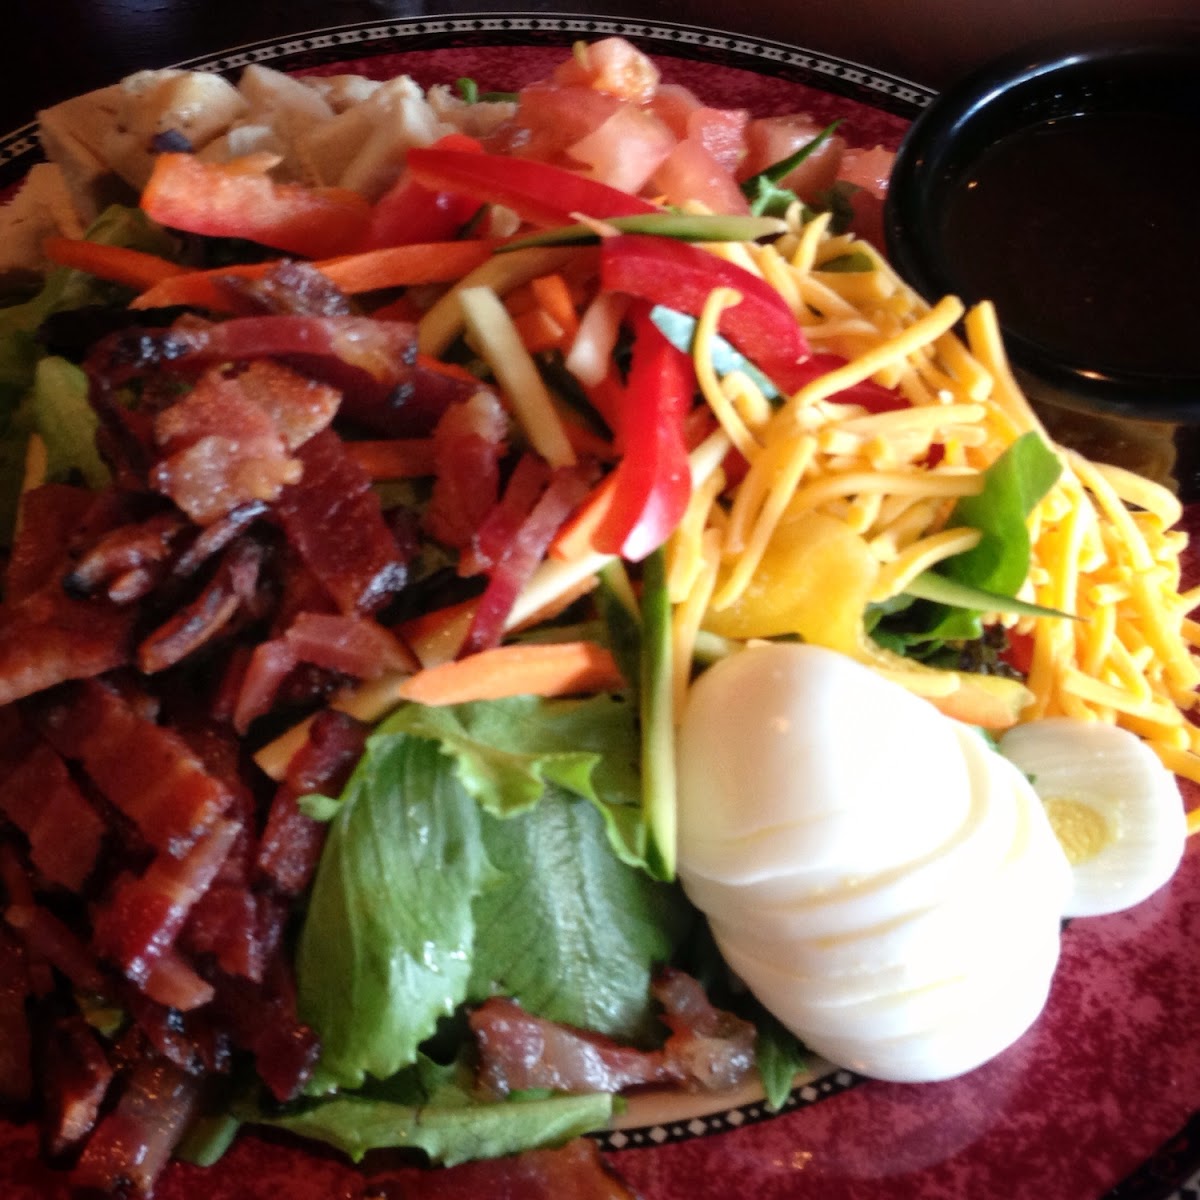 Cobb Salad with bacon and balsamic vinaigrette.